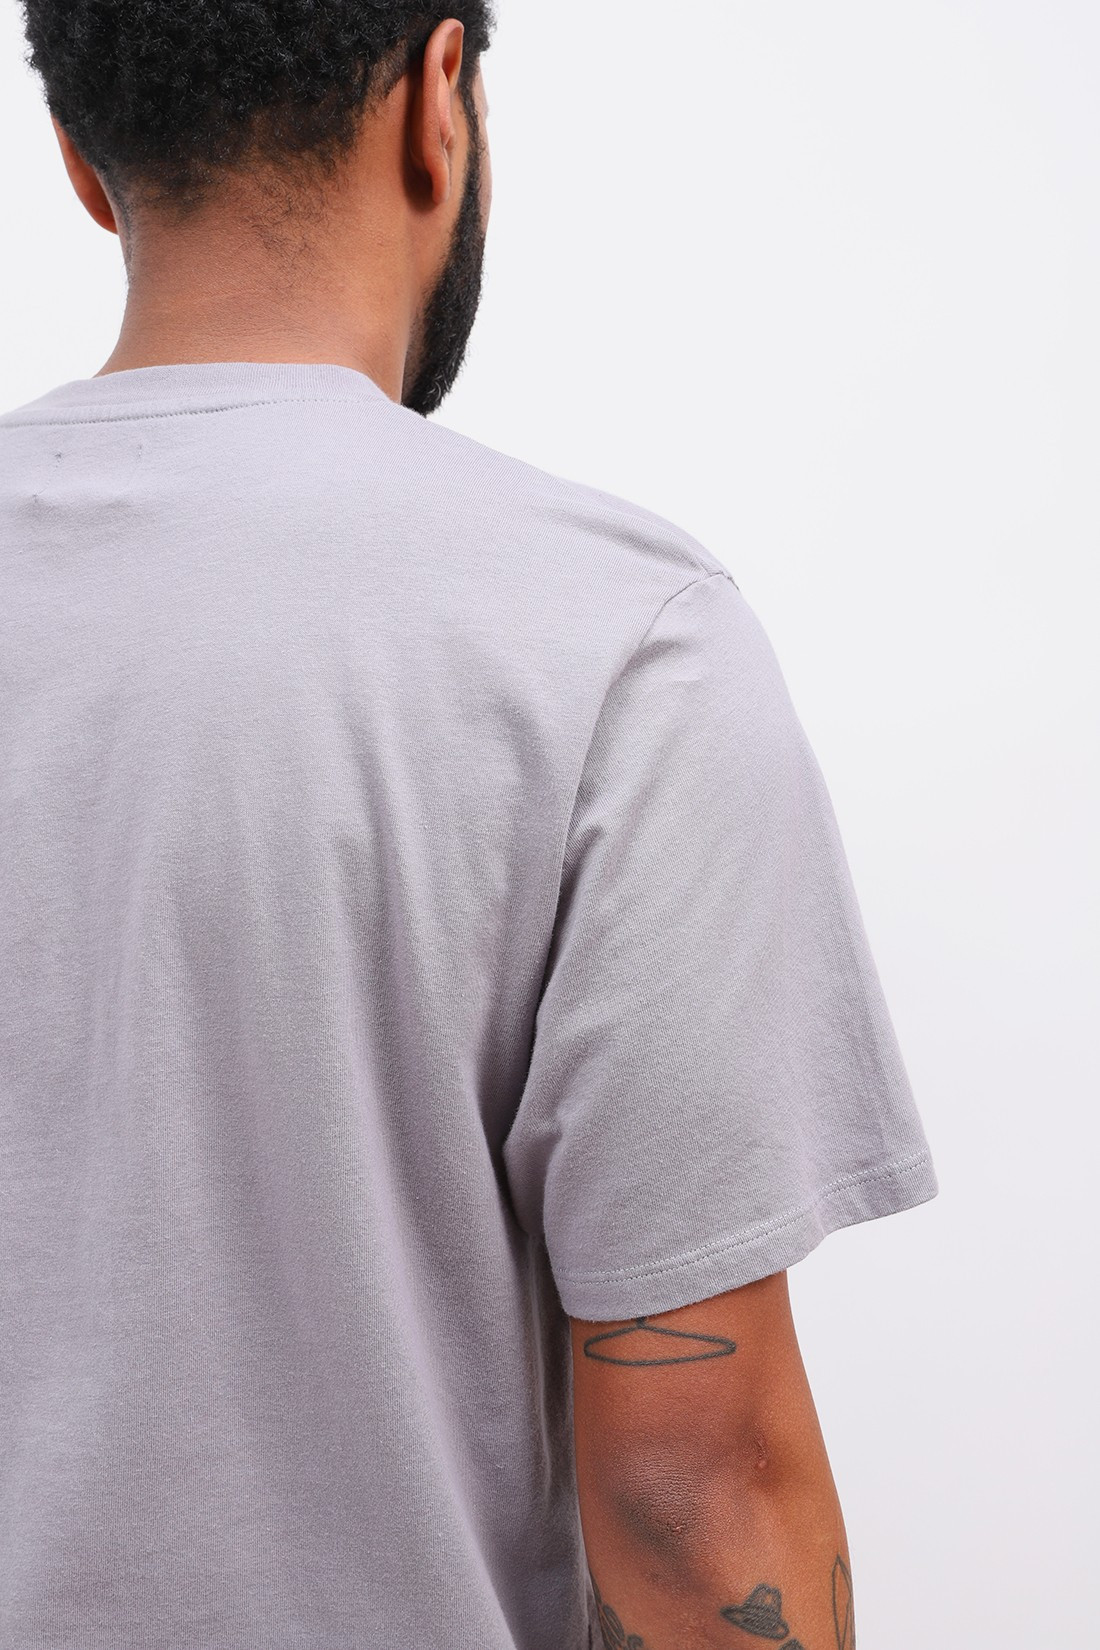 EDWIN / Japanese sun tee shirt Frost grey